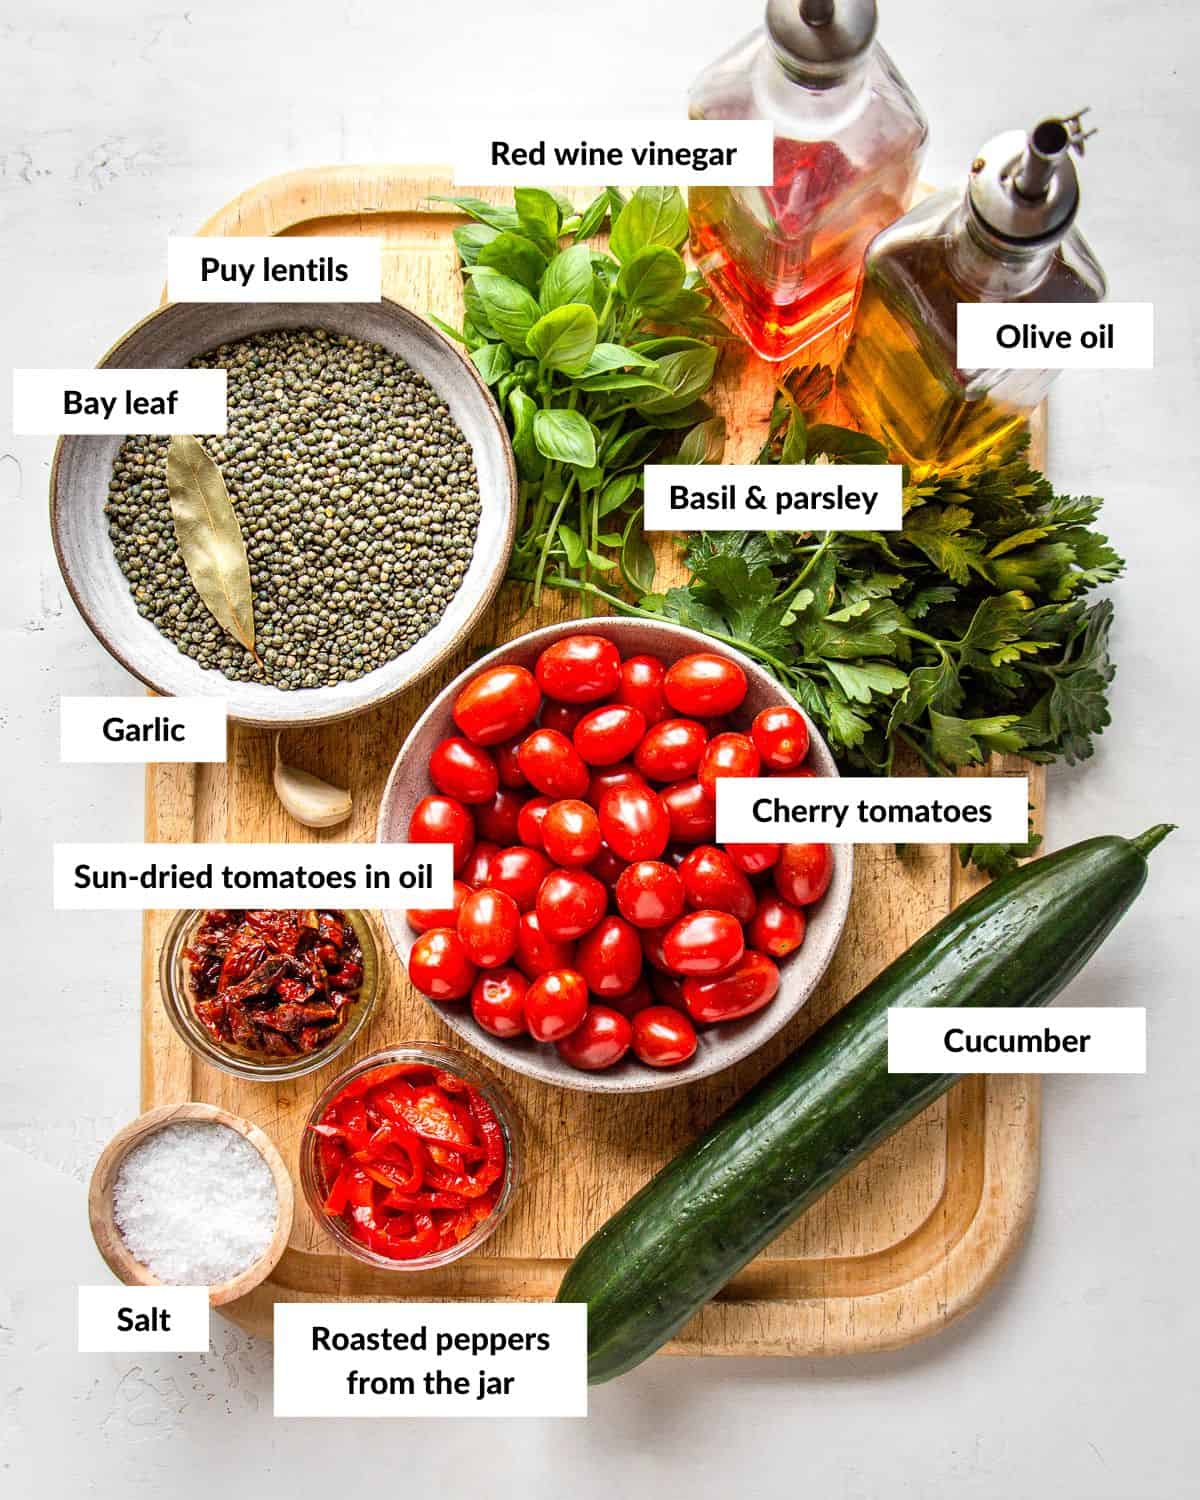 Ingredients for Puy lentil salad with descriptive labels.